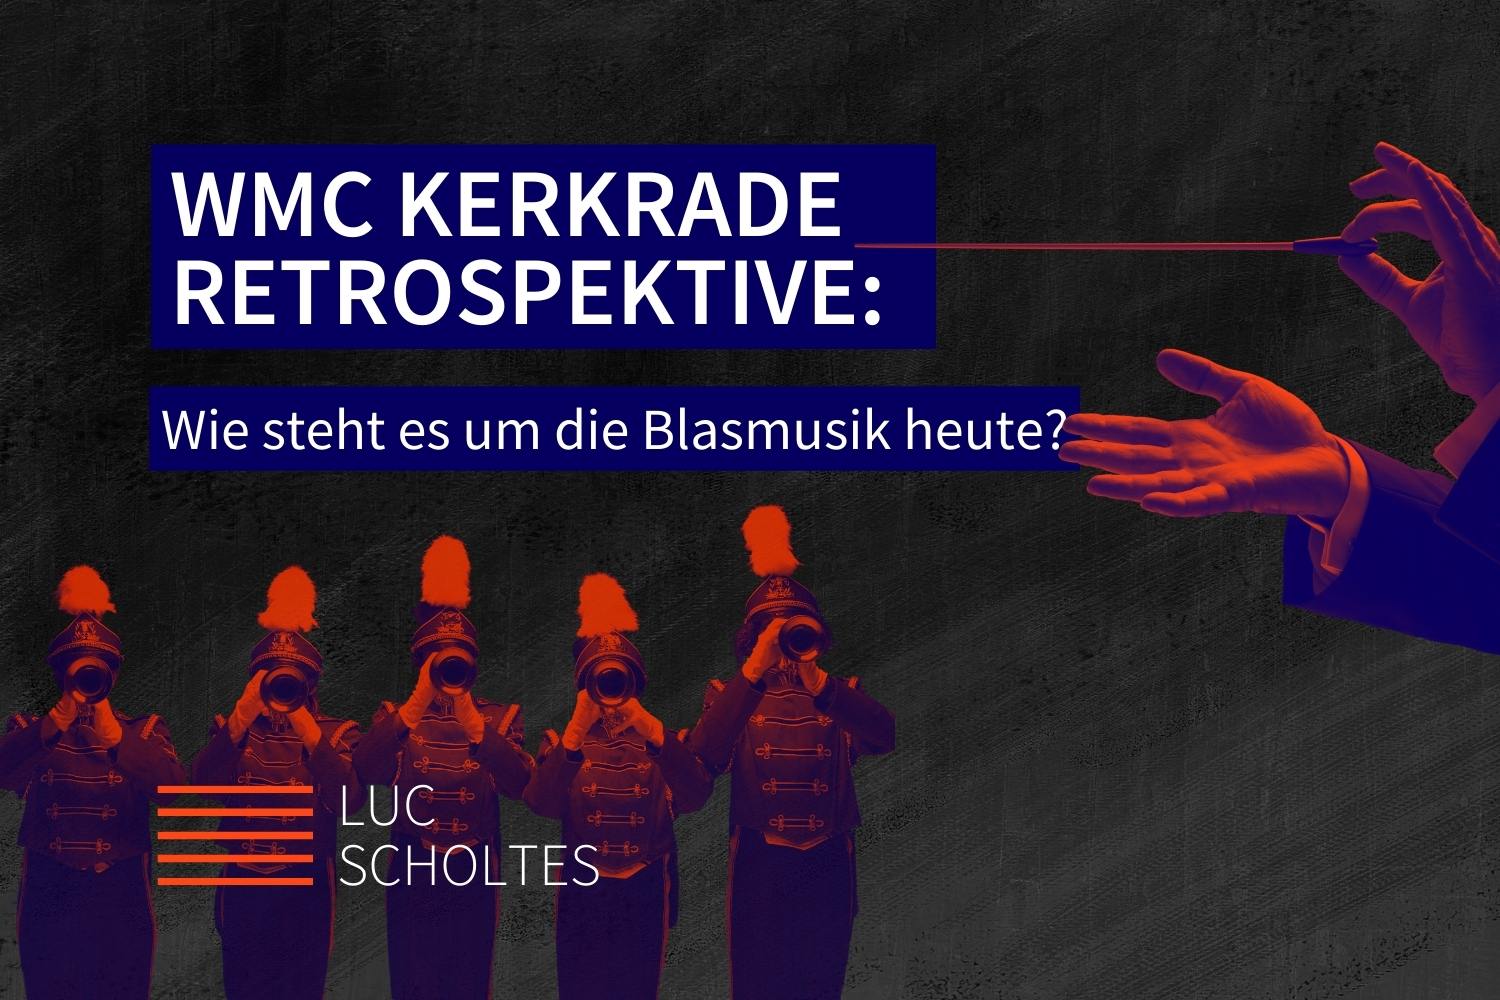 WMC Kerkrade Retrospektive: Wie steht es um die Blasmusik heute?